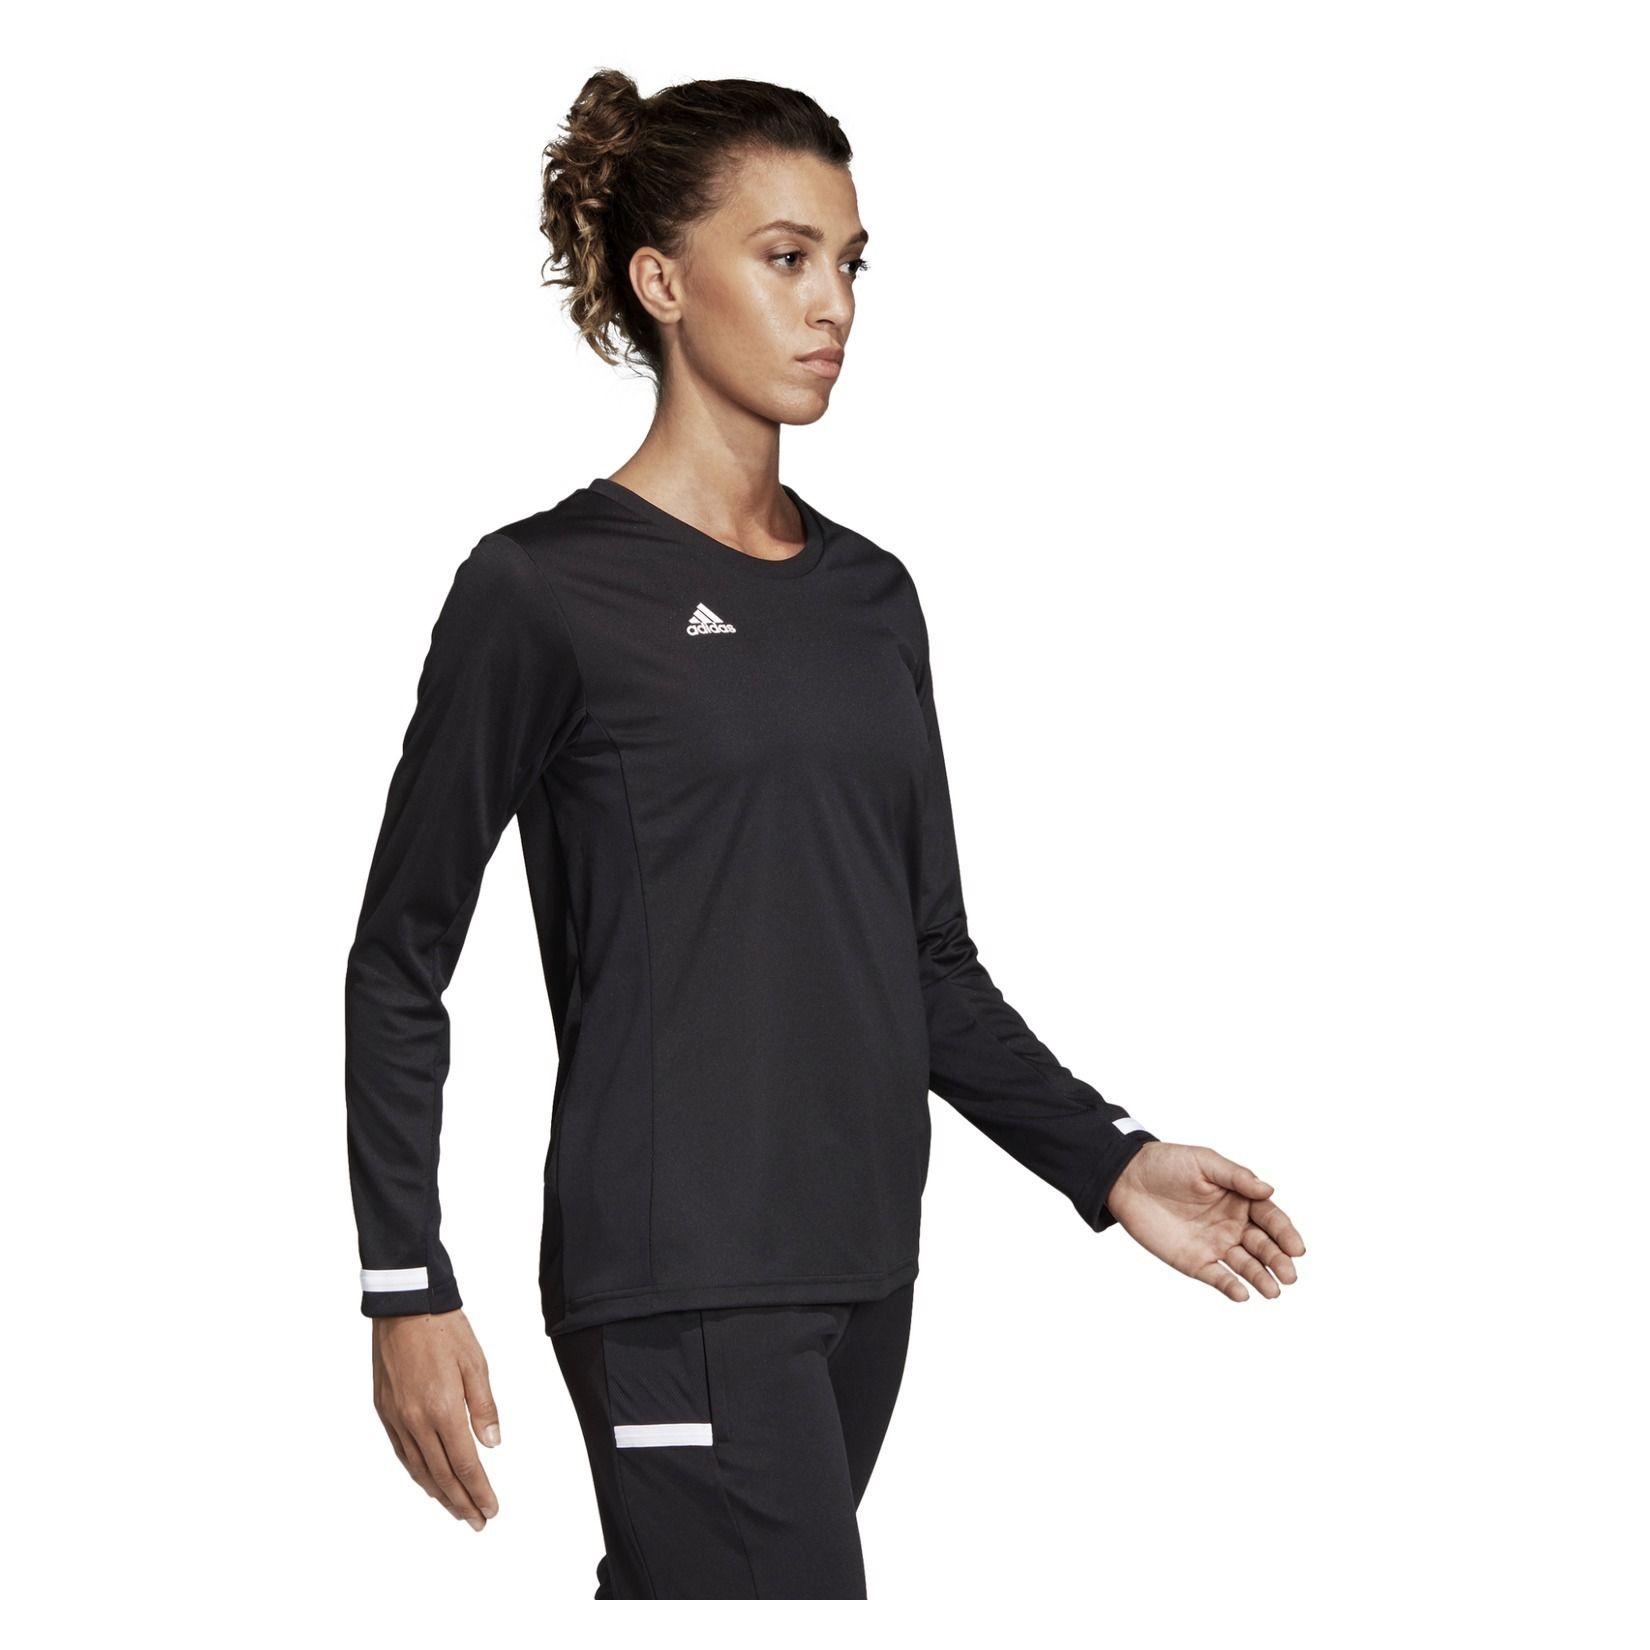 Adidas-LP Womens Team 19 Long Sleeve Jersey